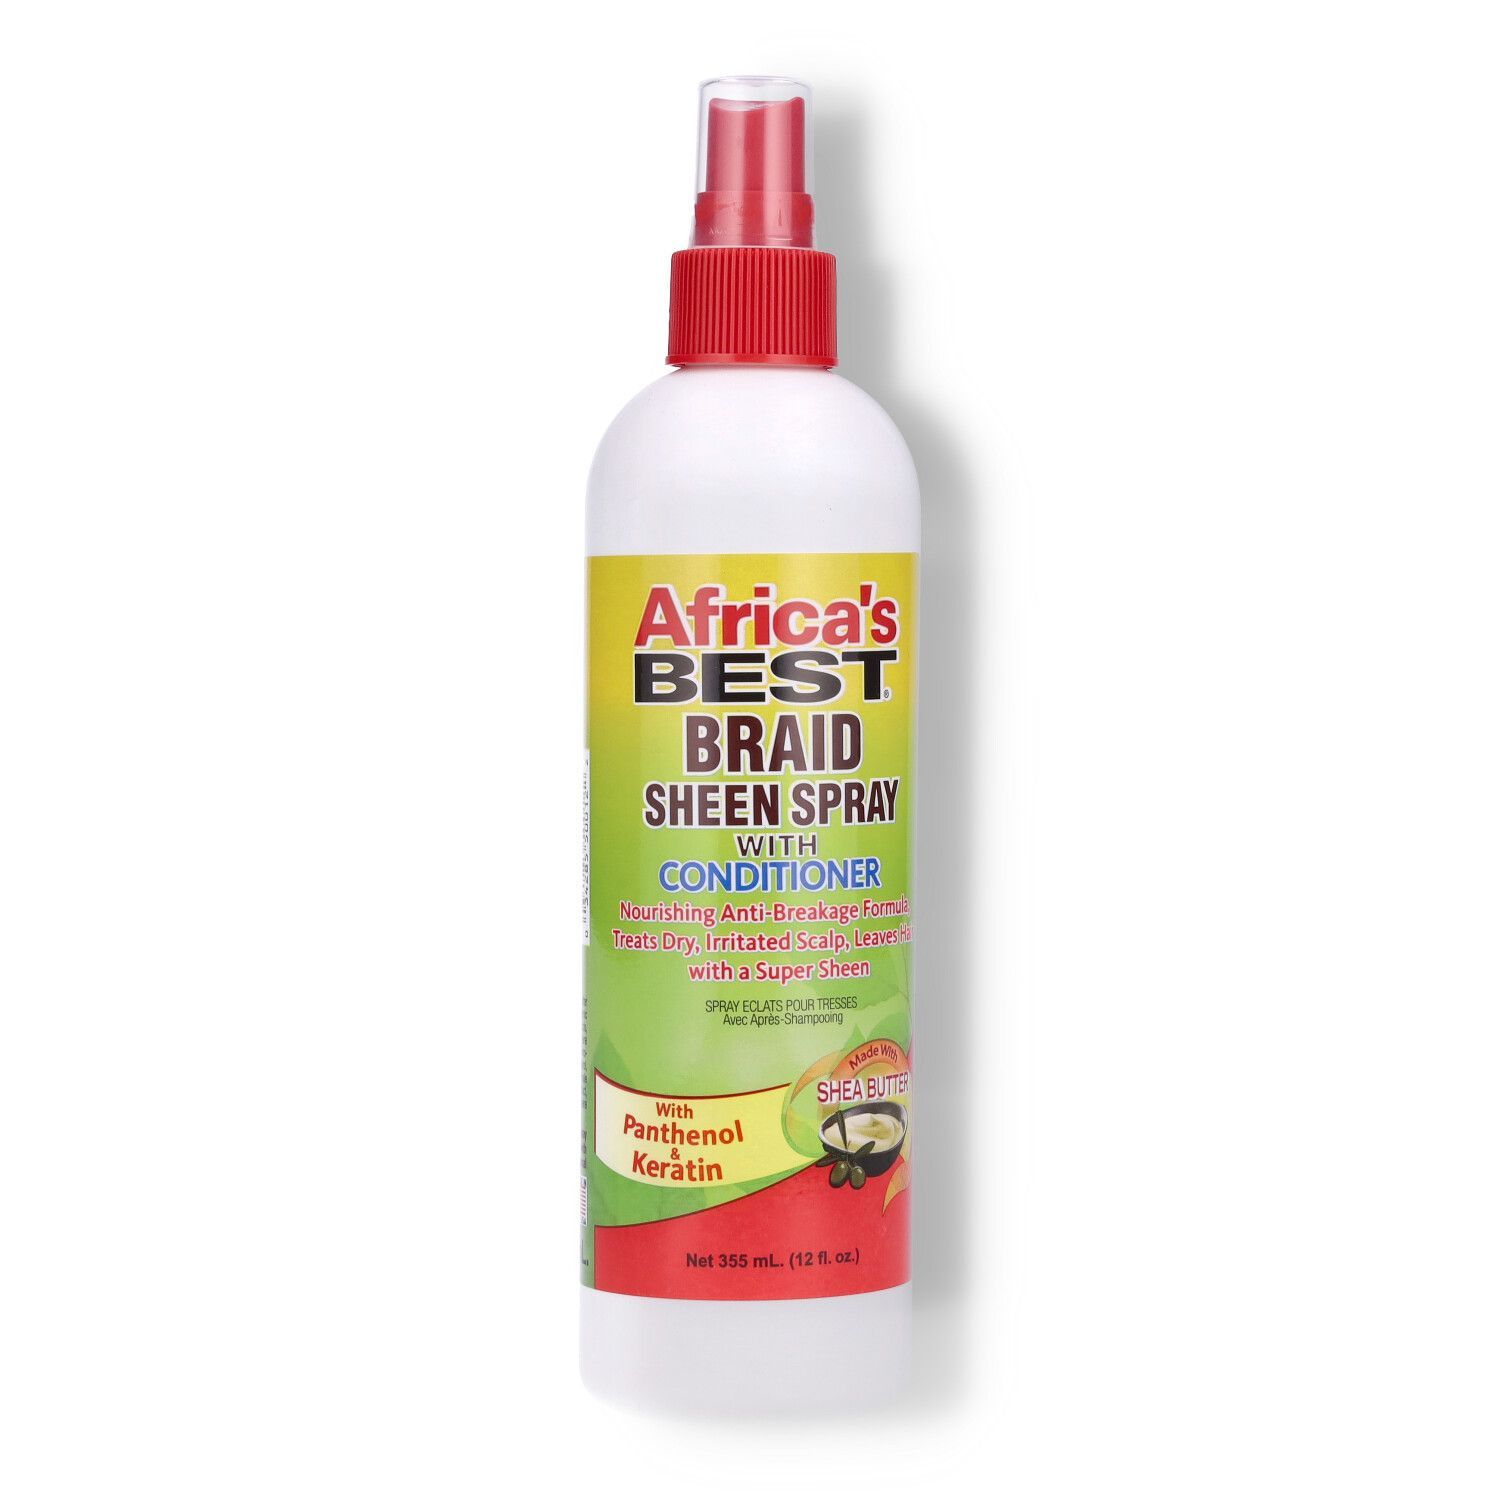 Africa's Best Braid Sheen Spray - 355ml